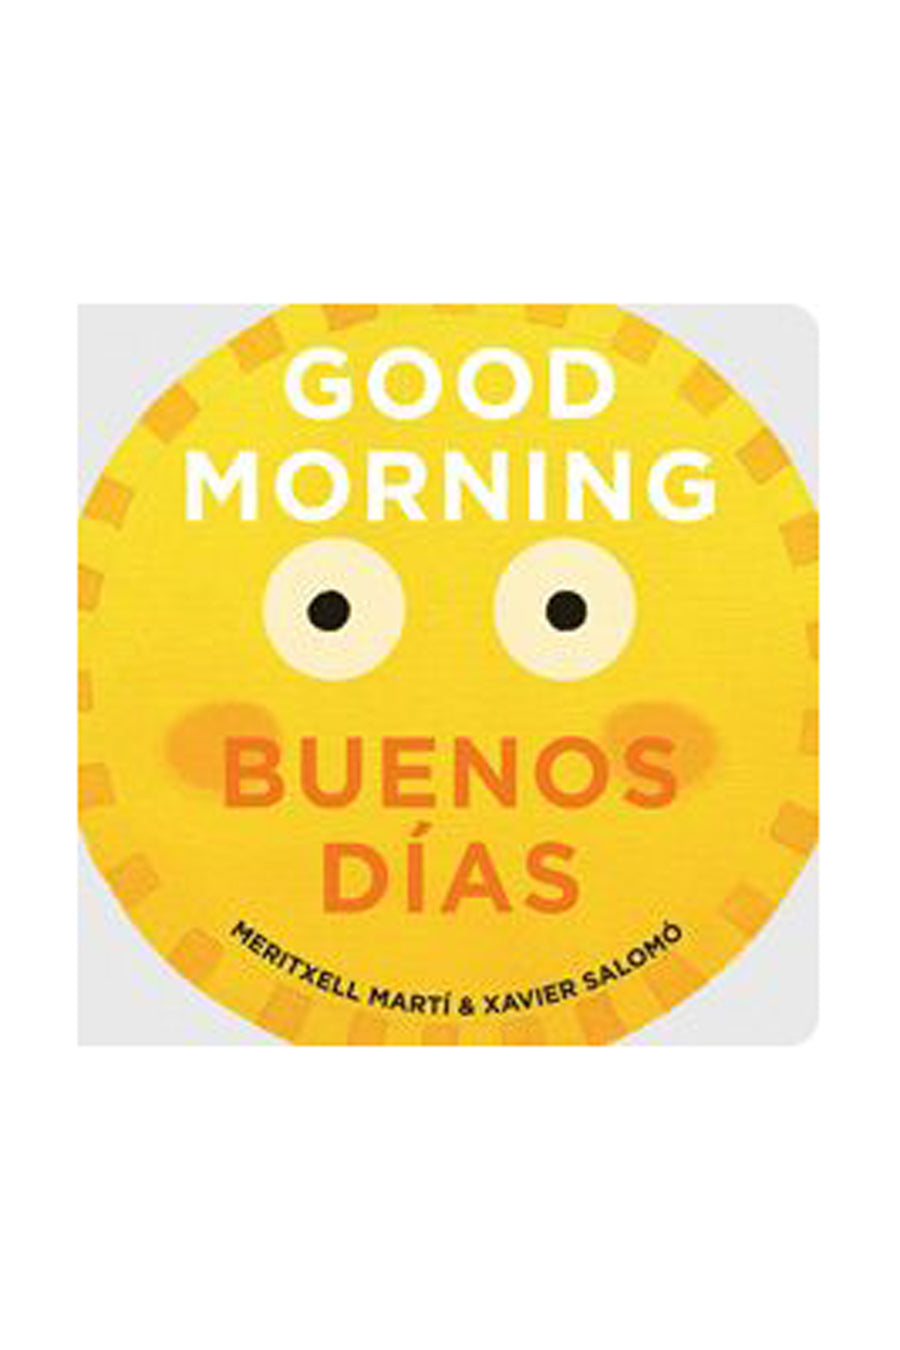 Good Morning - Buenos Días